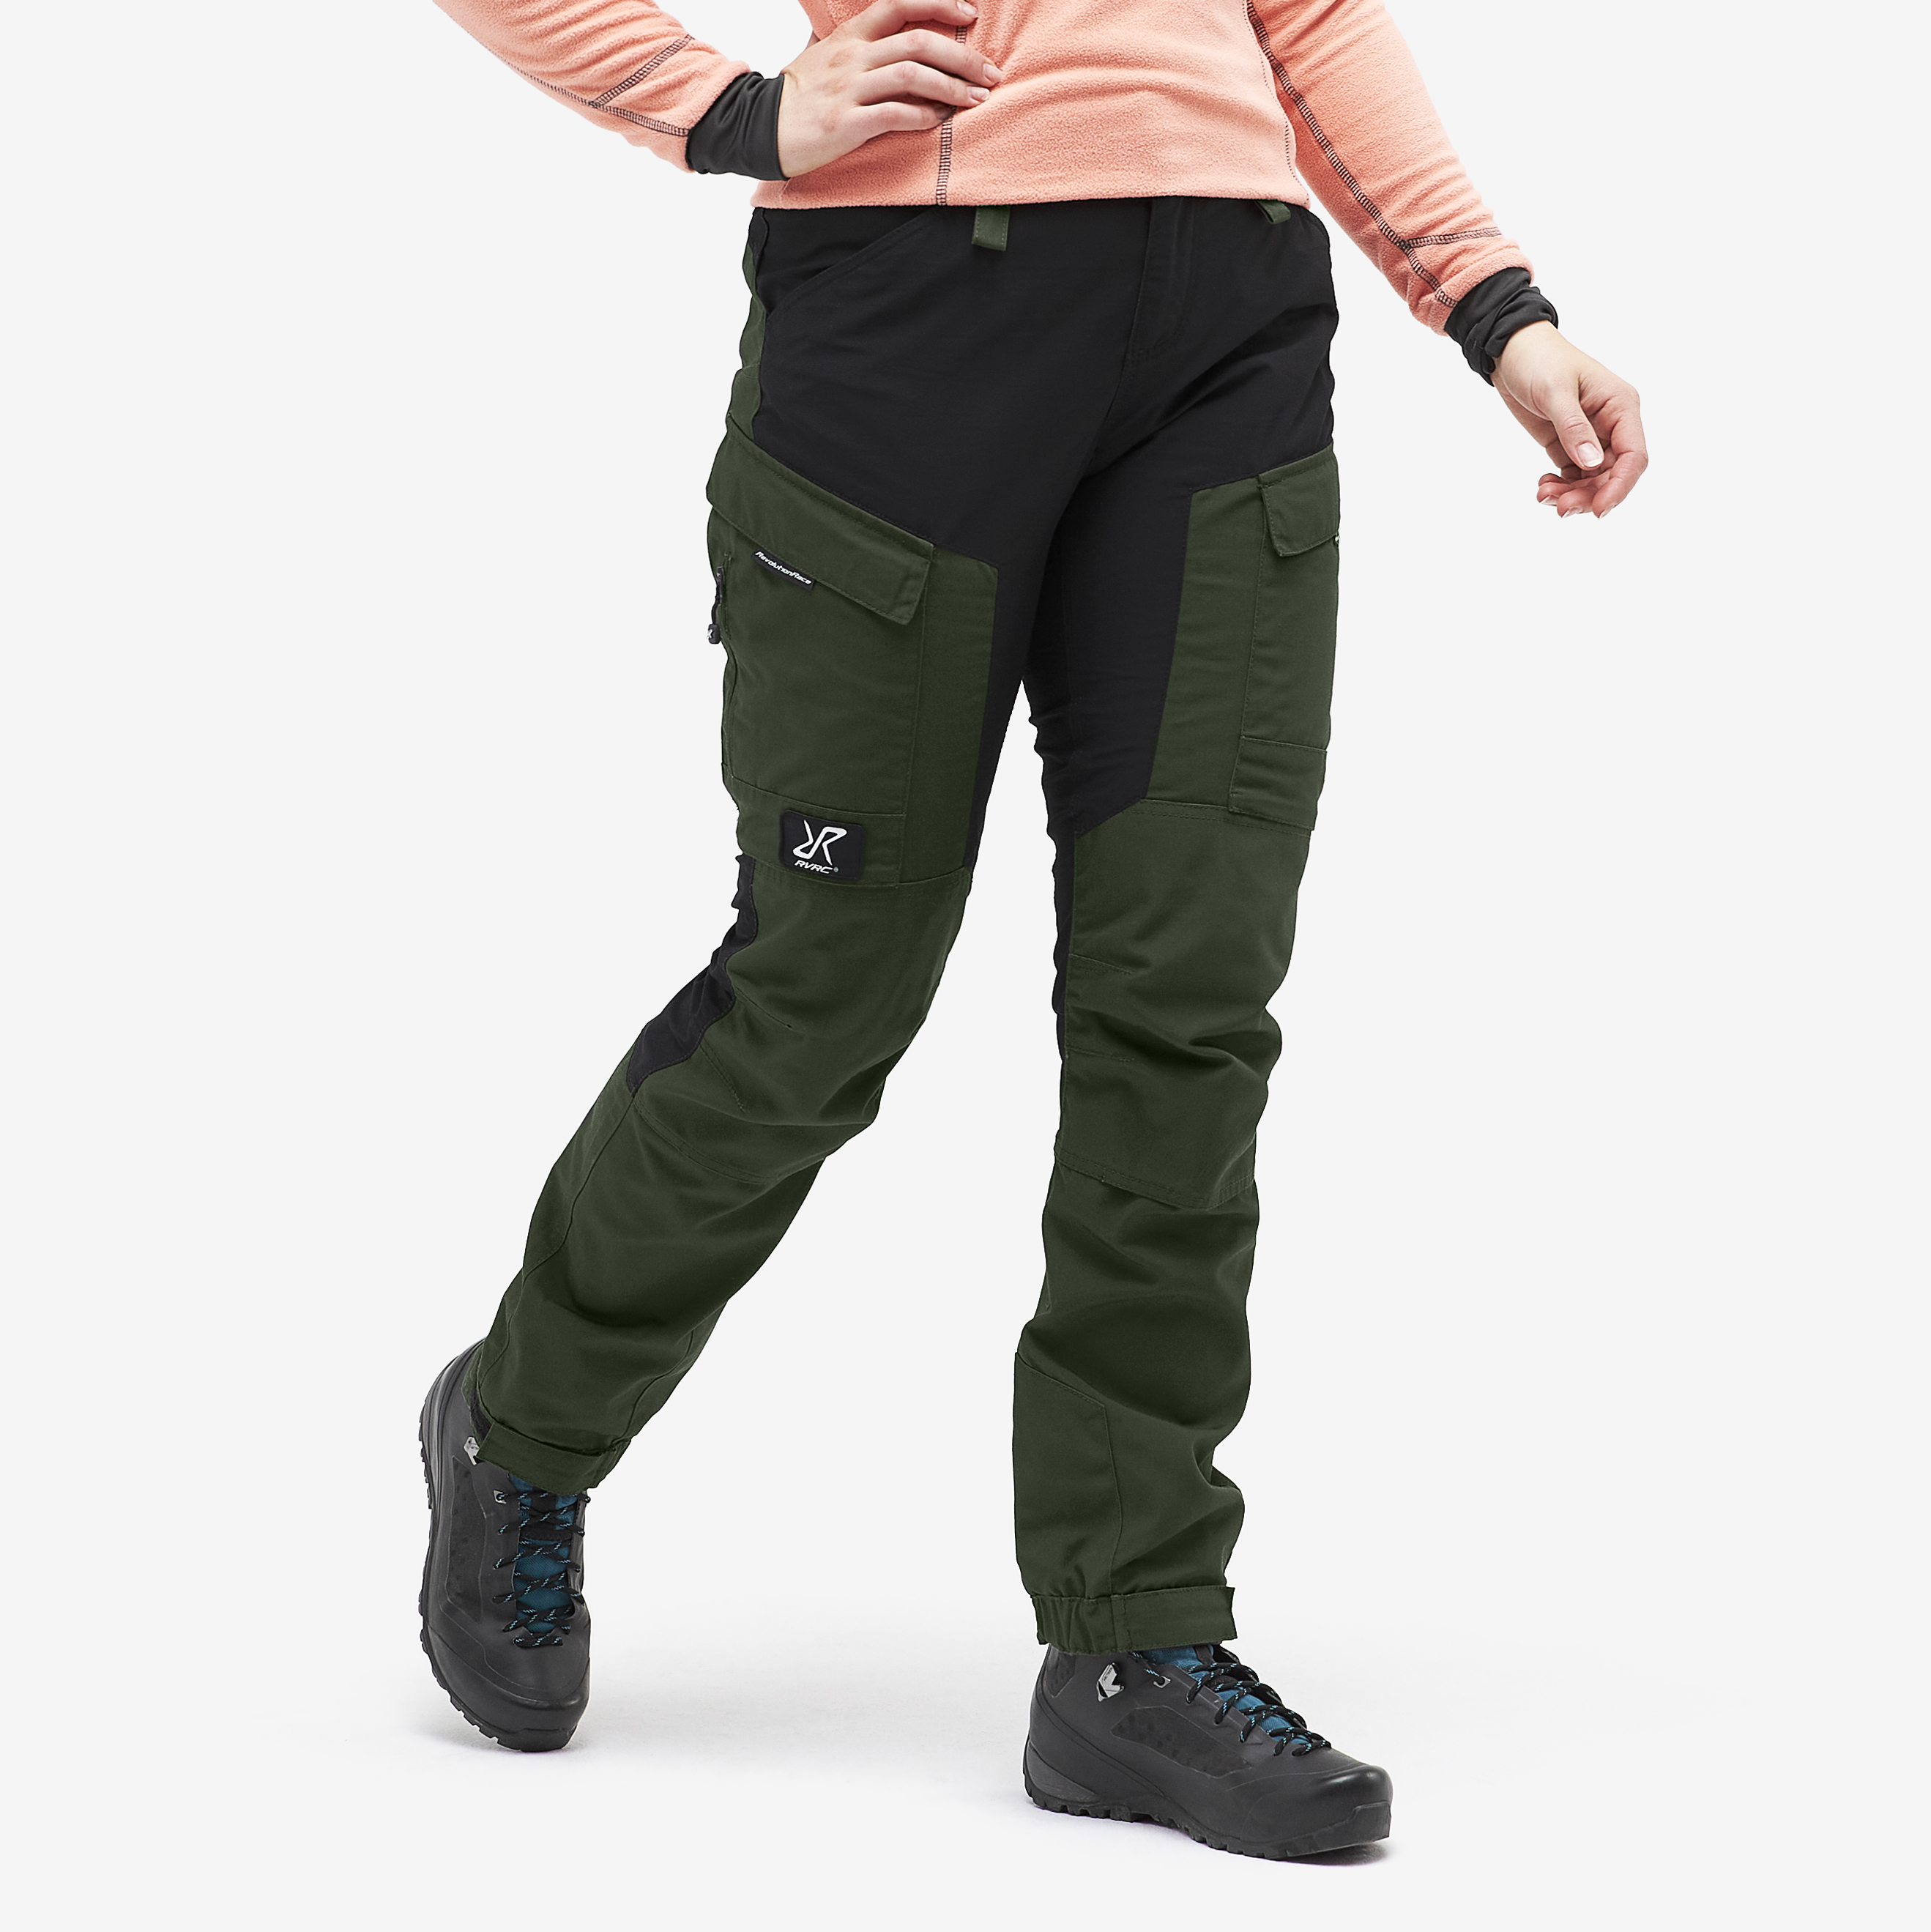 RVRC GP Short outdoorové kalhoty pro ženy v zelené barvě